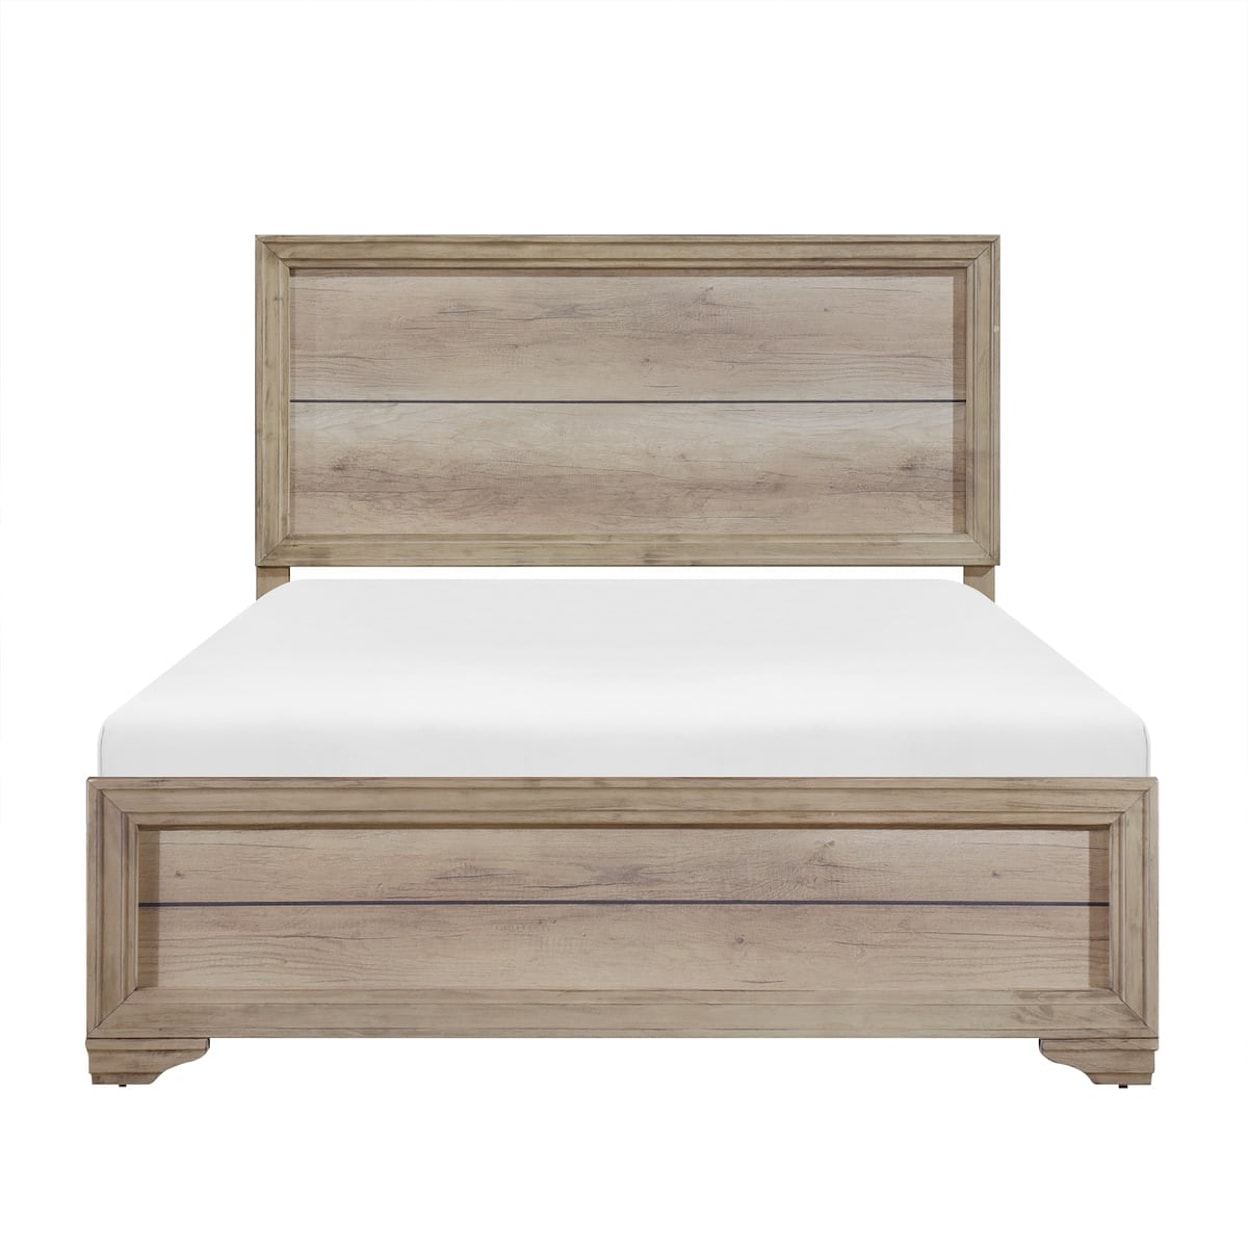 Homelegance Furniture Lonan Queen Bed